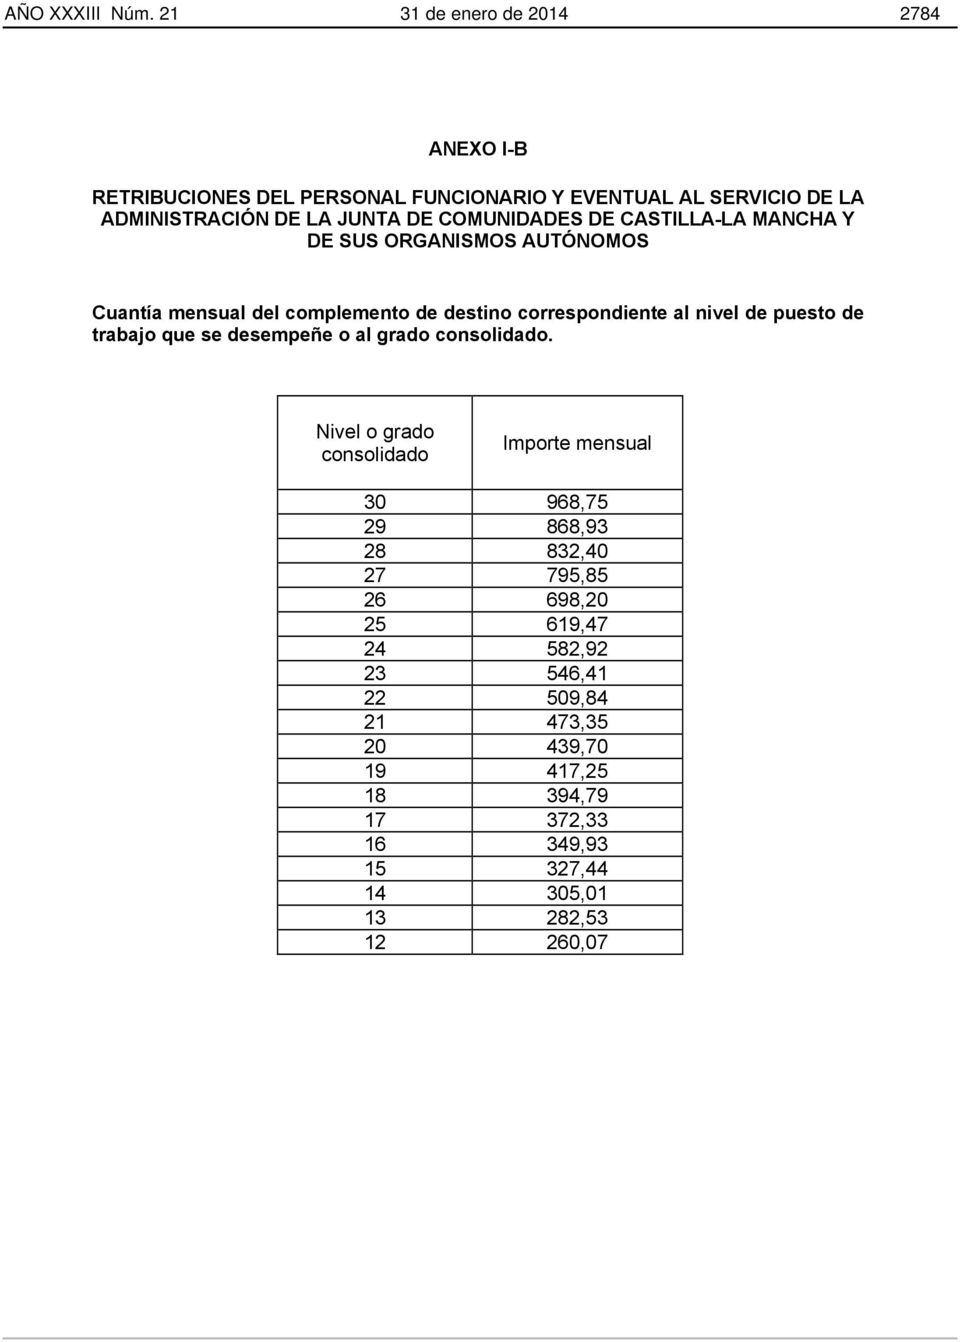 COMUNIDADES DE CASTILLA-LA MANCHA Y DE SUS ORGANISMOS AUTÓNOMOS Cuantía mensual del complemento de destino correspondiente al nivel de puesto de